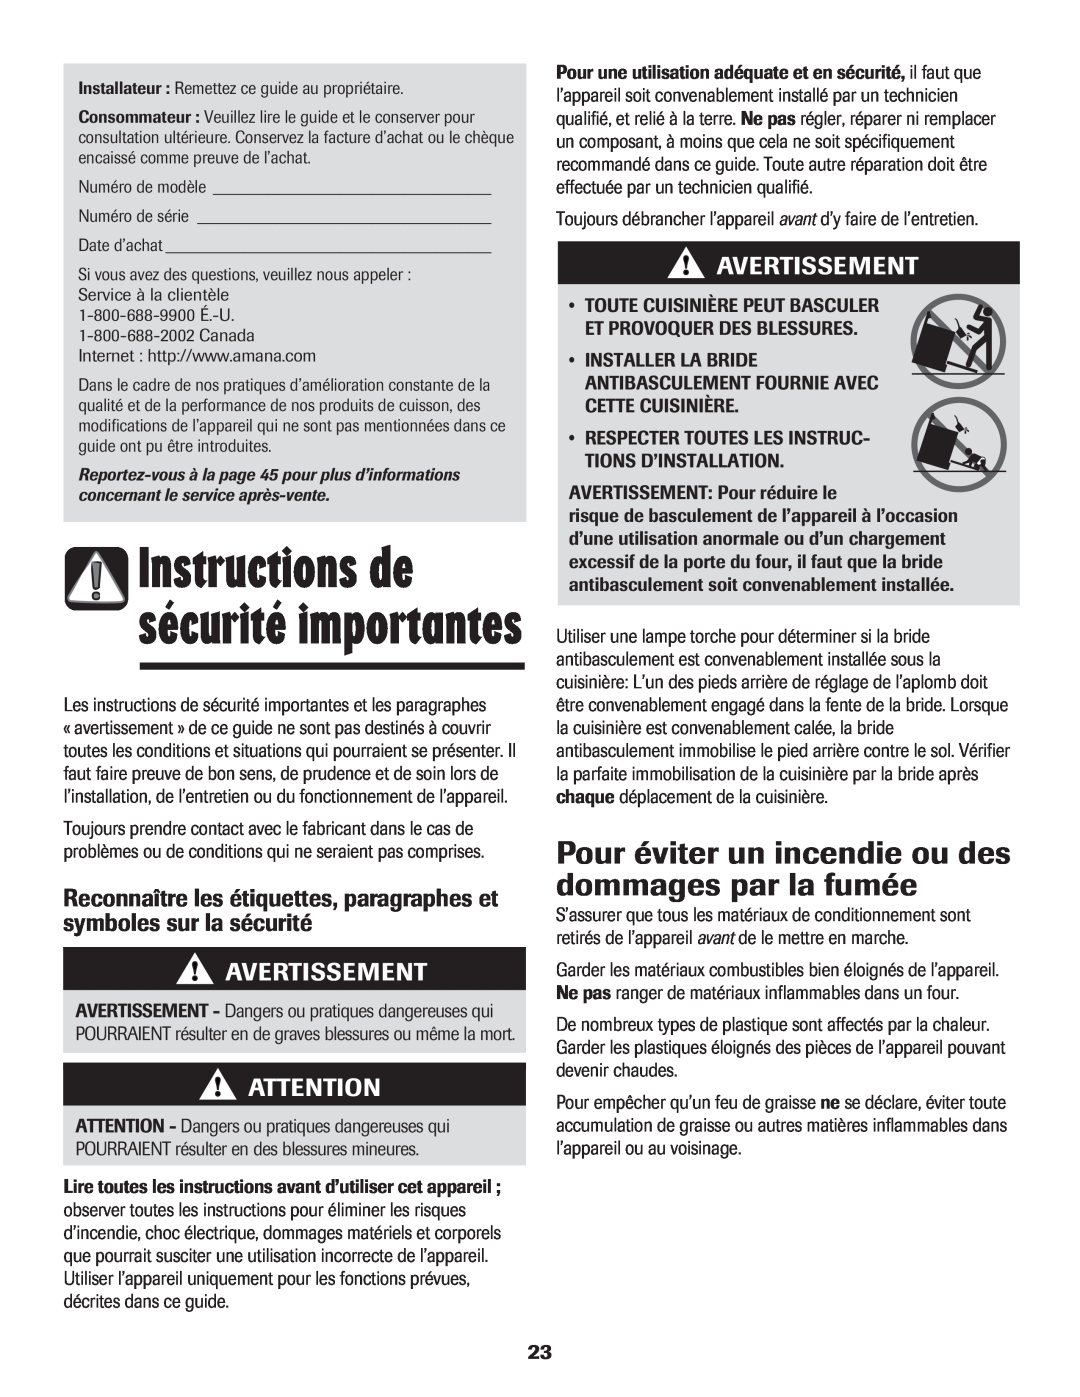 Amana Electric Smoothtop Range important safety instructions Avertissement, Instructions de sécurité importantes 